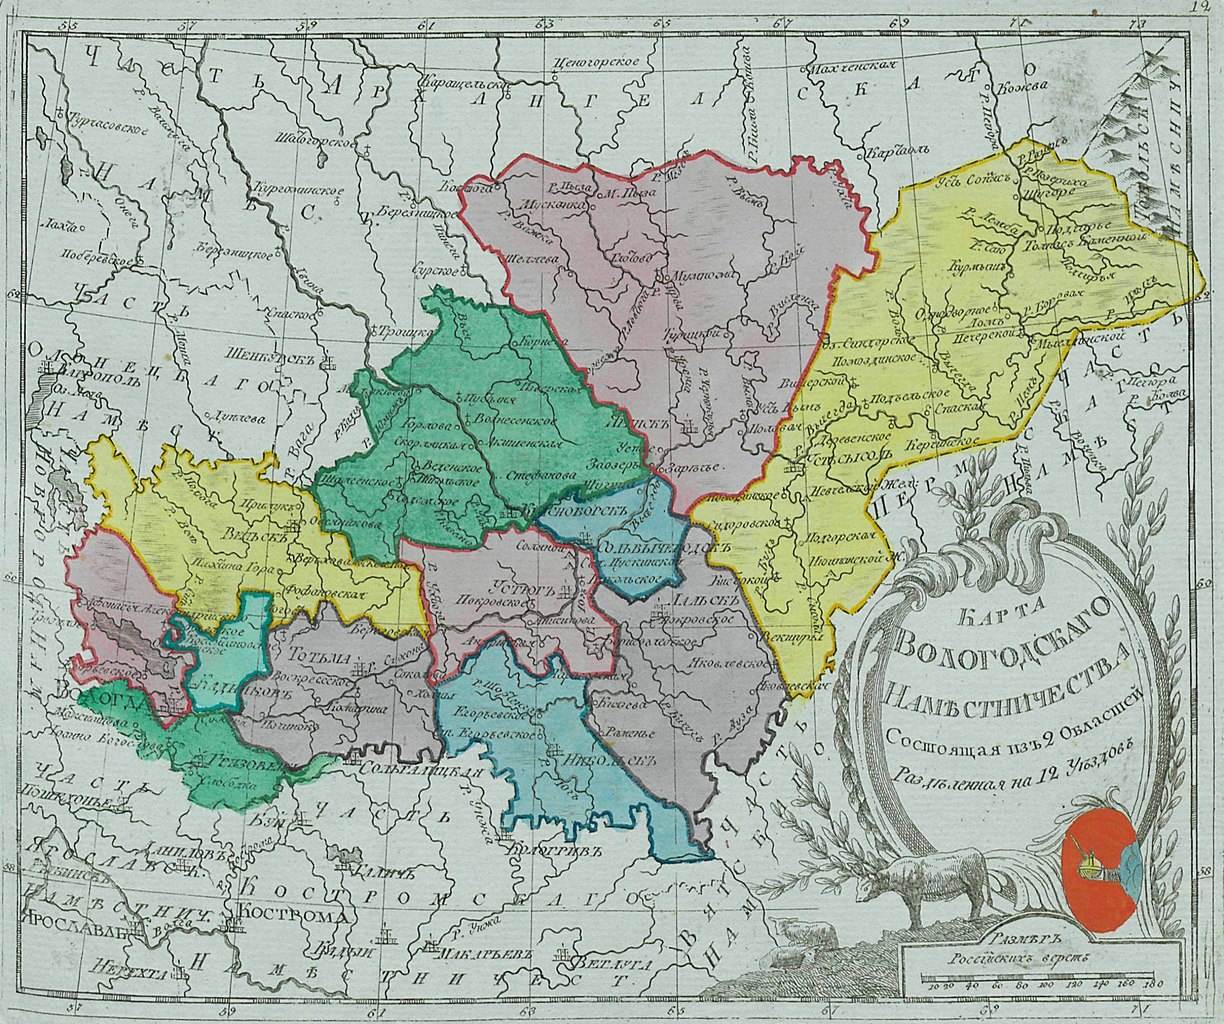 Вологодский уезд в составе Вологодского наместничества, 1792 год